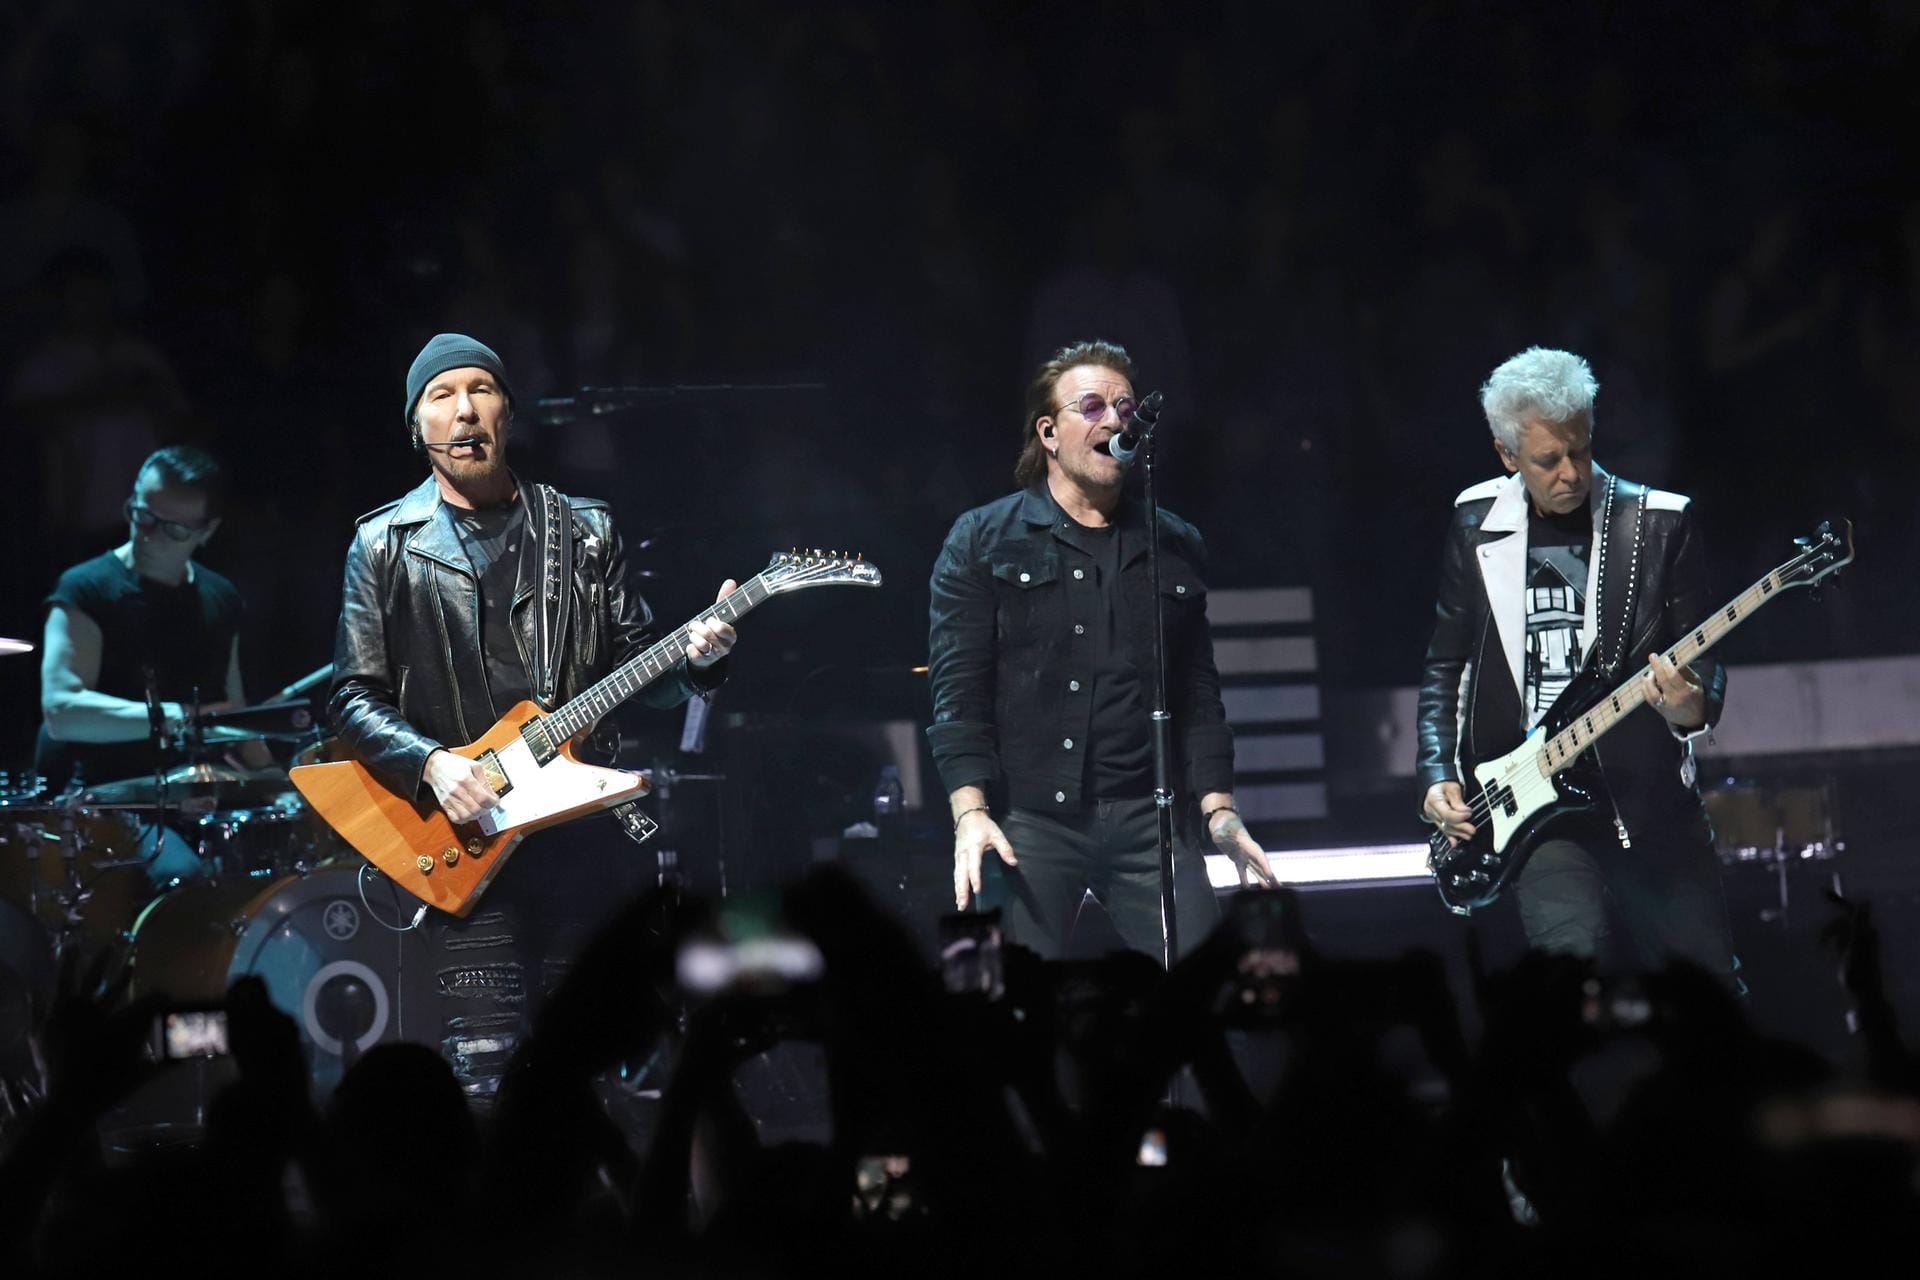 6. Platz: Die irische Rockband U2 sind mit 118 Millionen Dollar (rund 101 Millionen Euro) die erfolgreichsten Musiker in der Top 10.